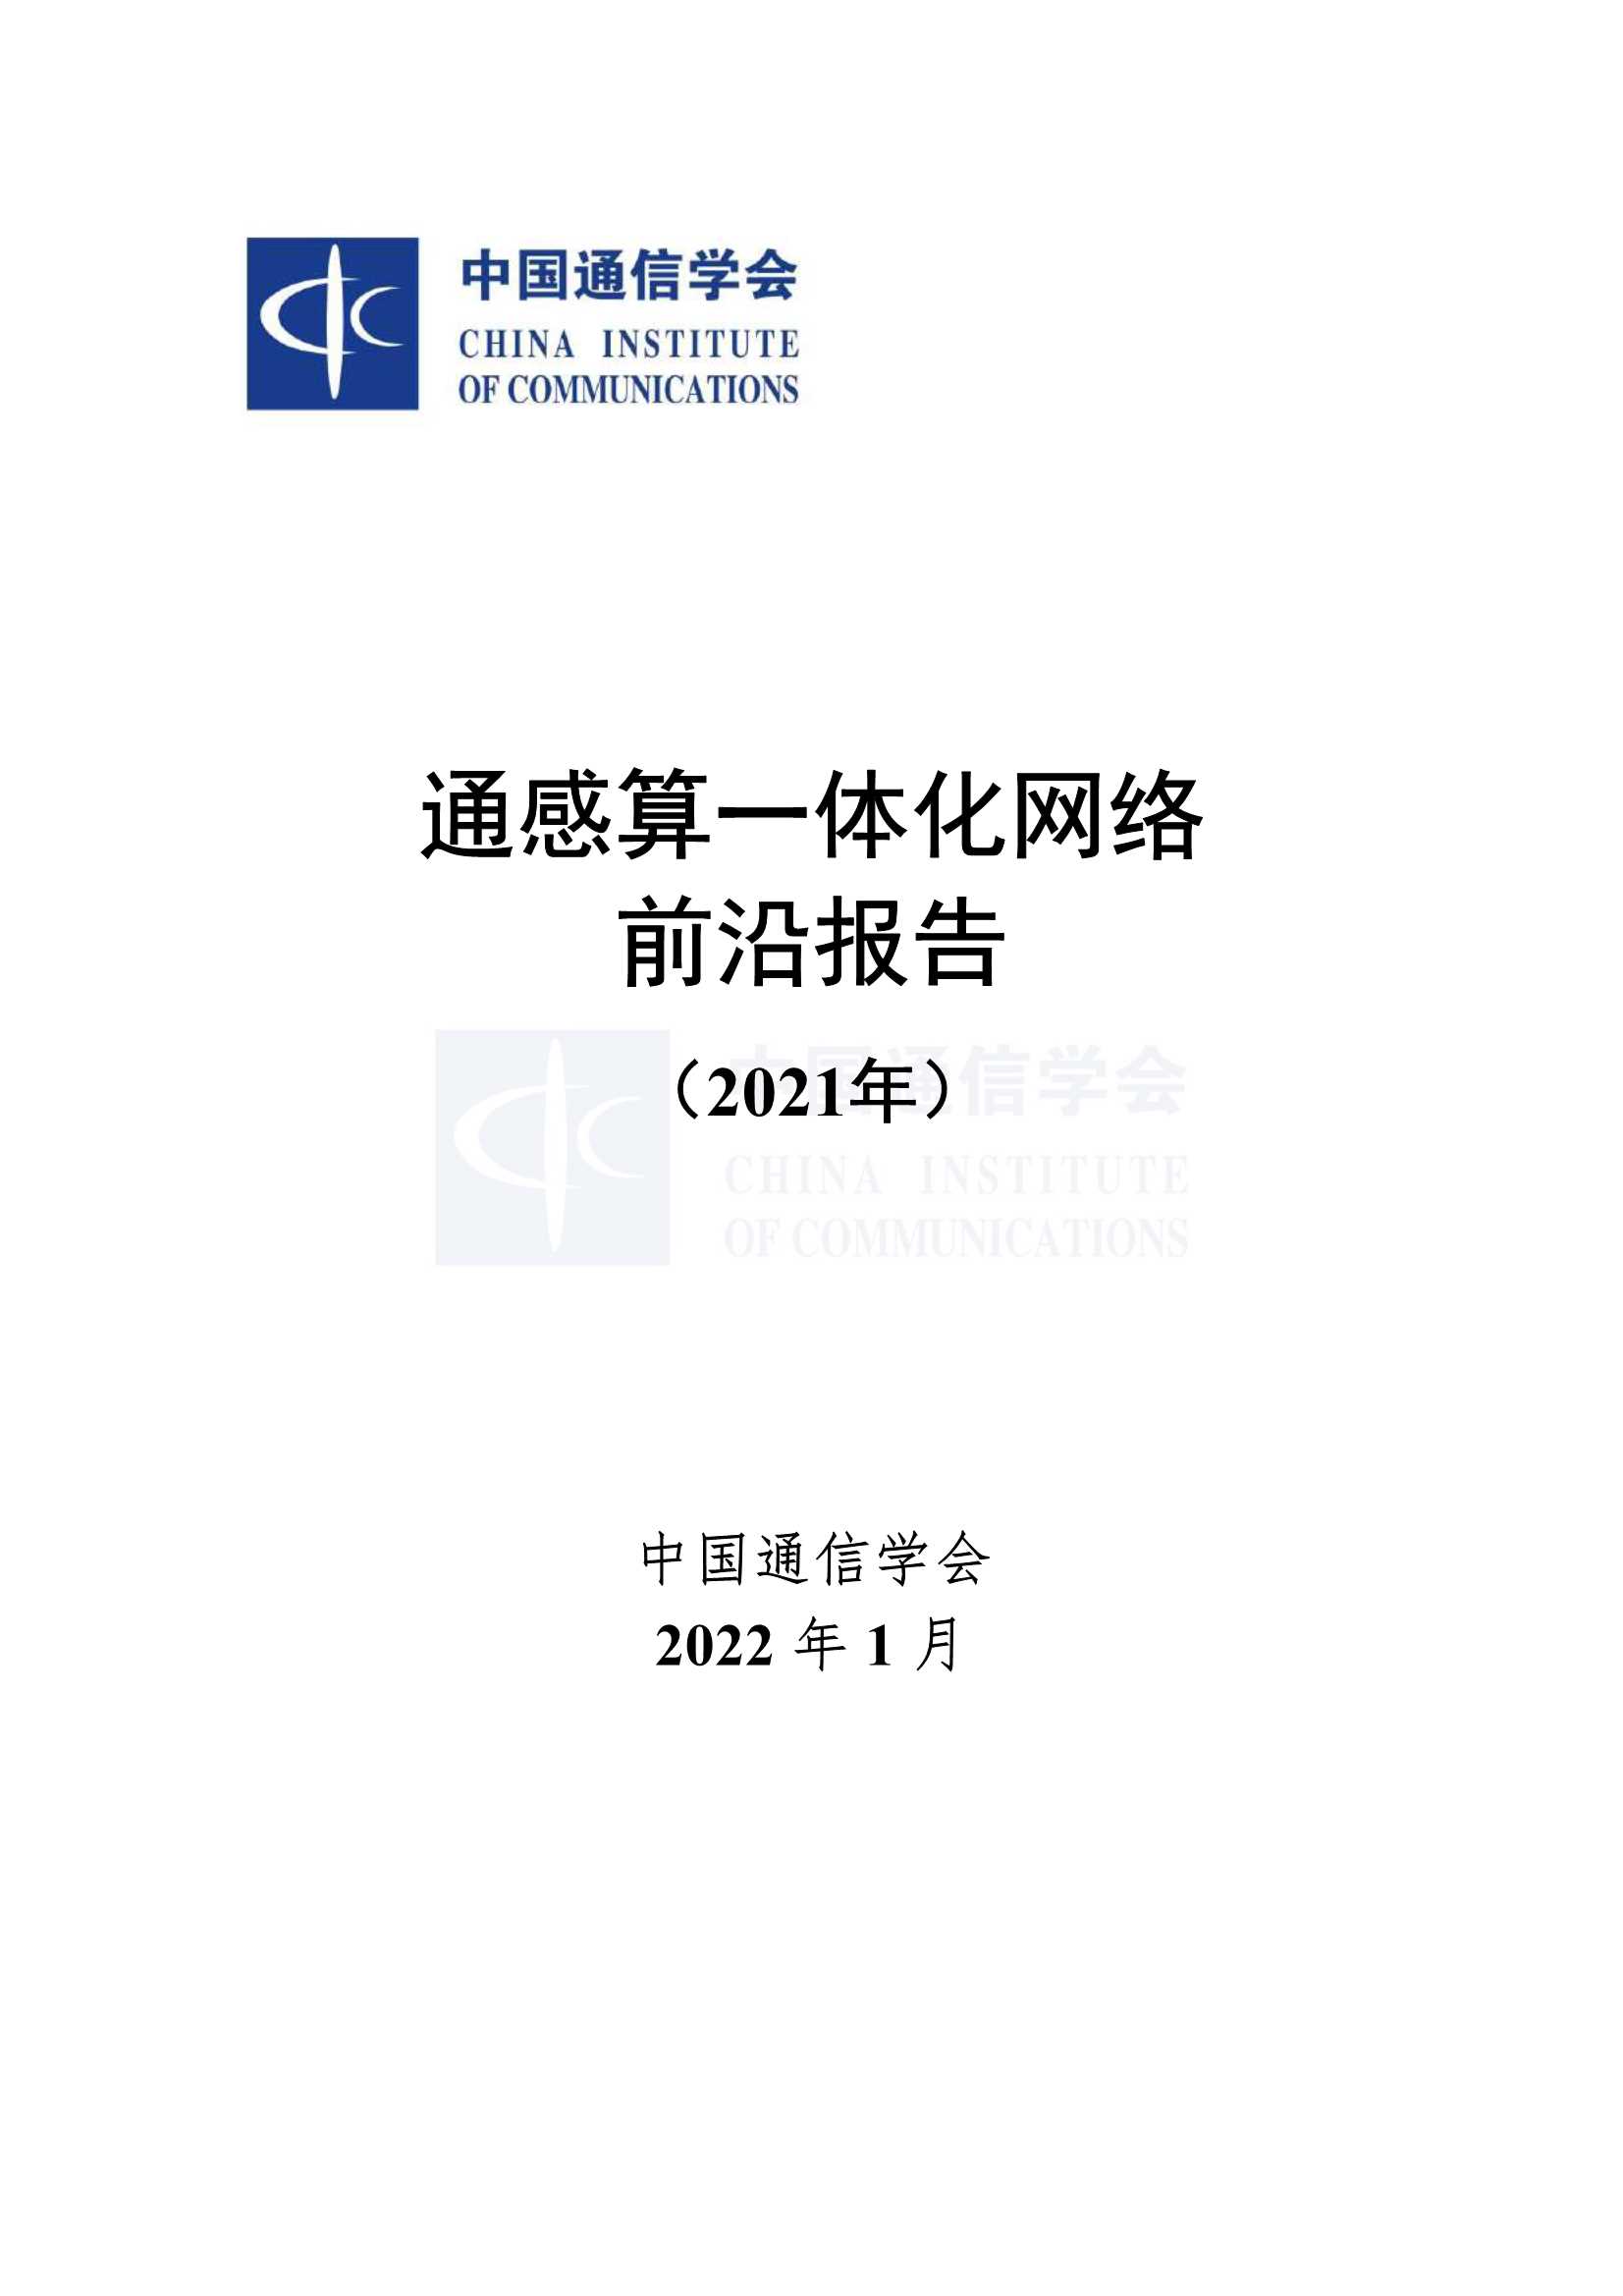 中国通信协会-通感算一体化网络前沿报告（2021）-2022.04-74页